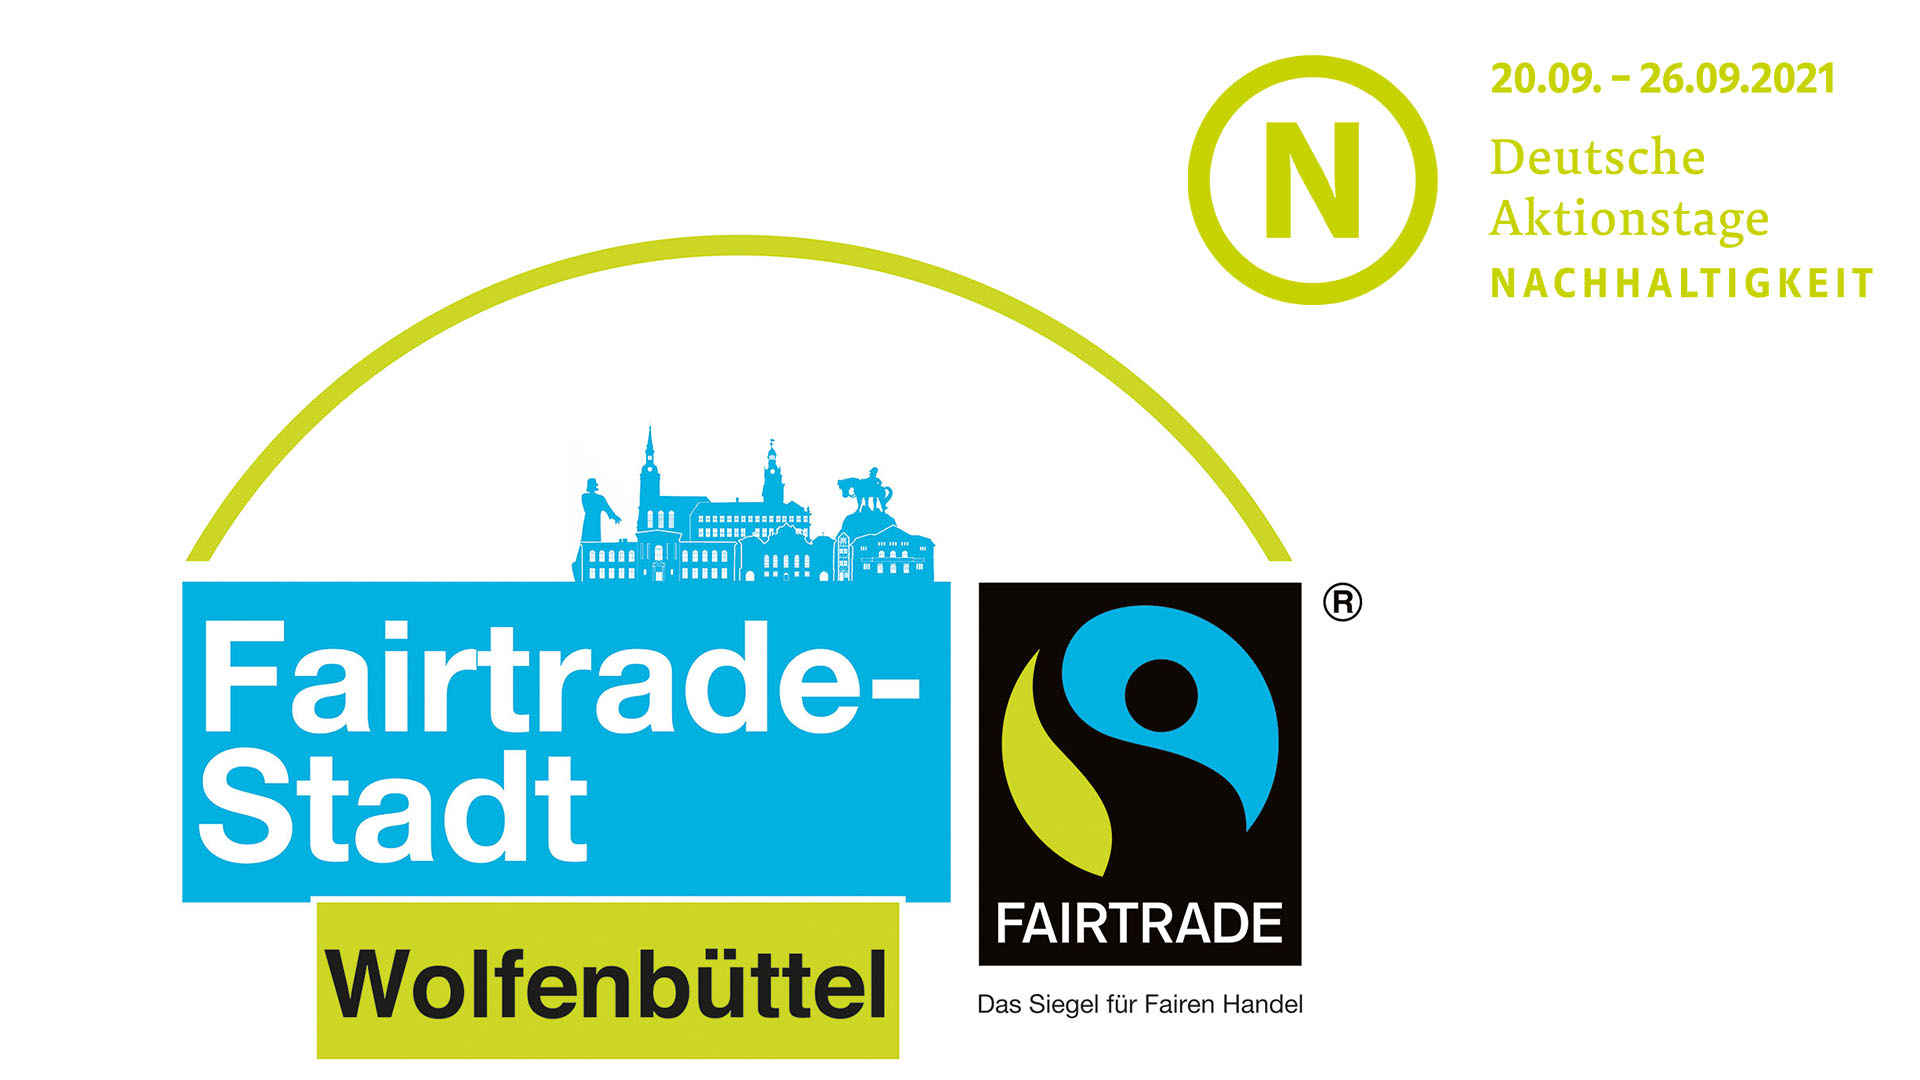 Logo der Fairtrade-Stadt Wolfenbüttel, kombiniert mit dem Logo der Deutschen Atkionstage für Nachhaltigkeit.